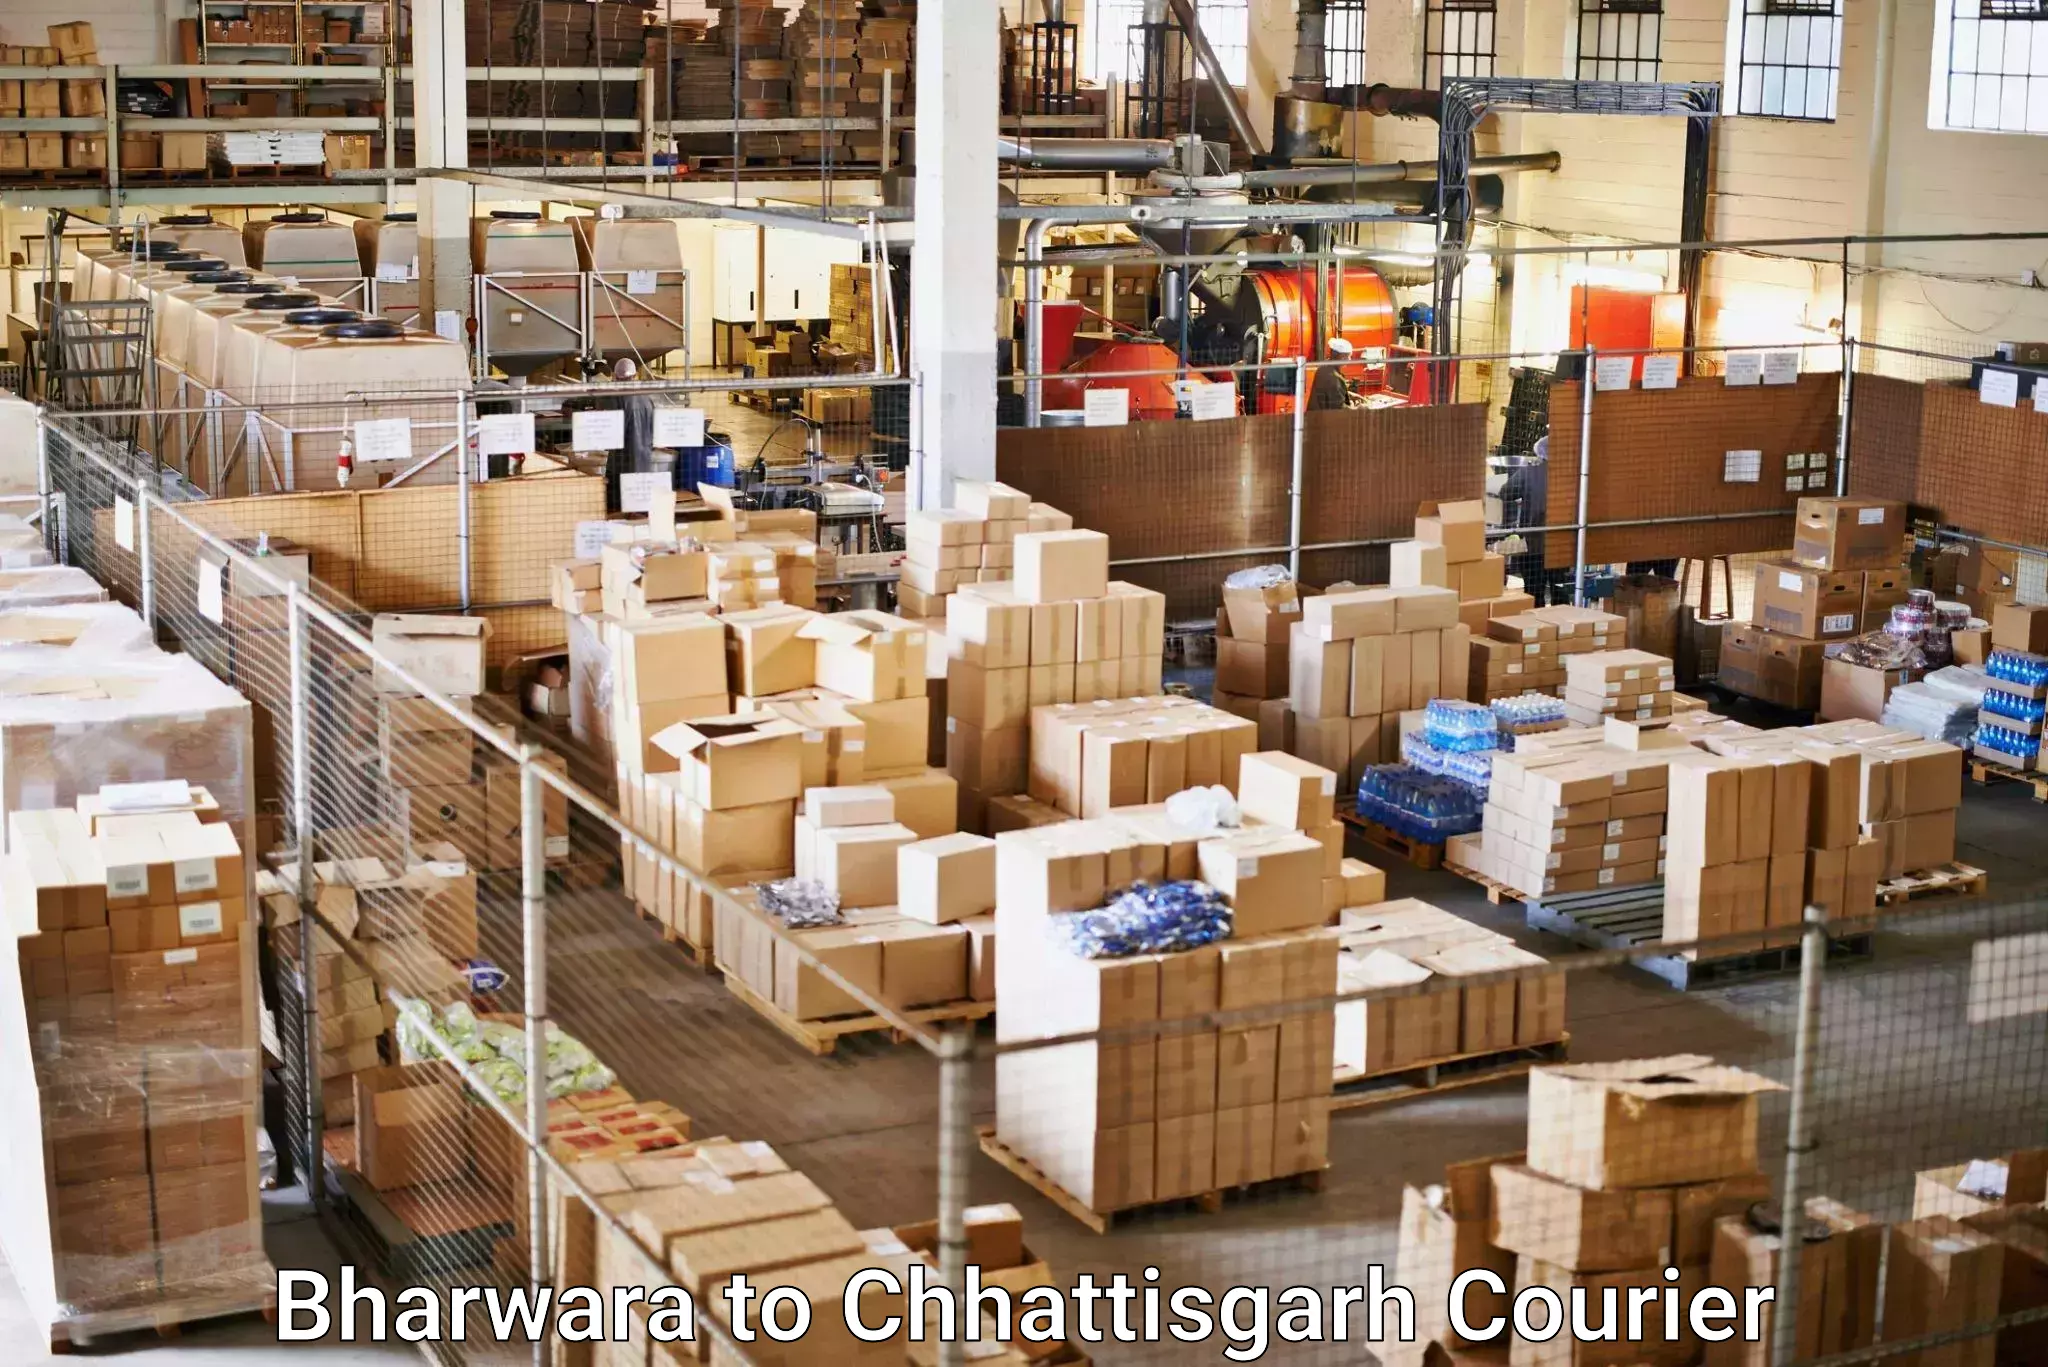 Customizable shipping options Bharwara to Korea Chhattisgarh